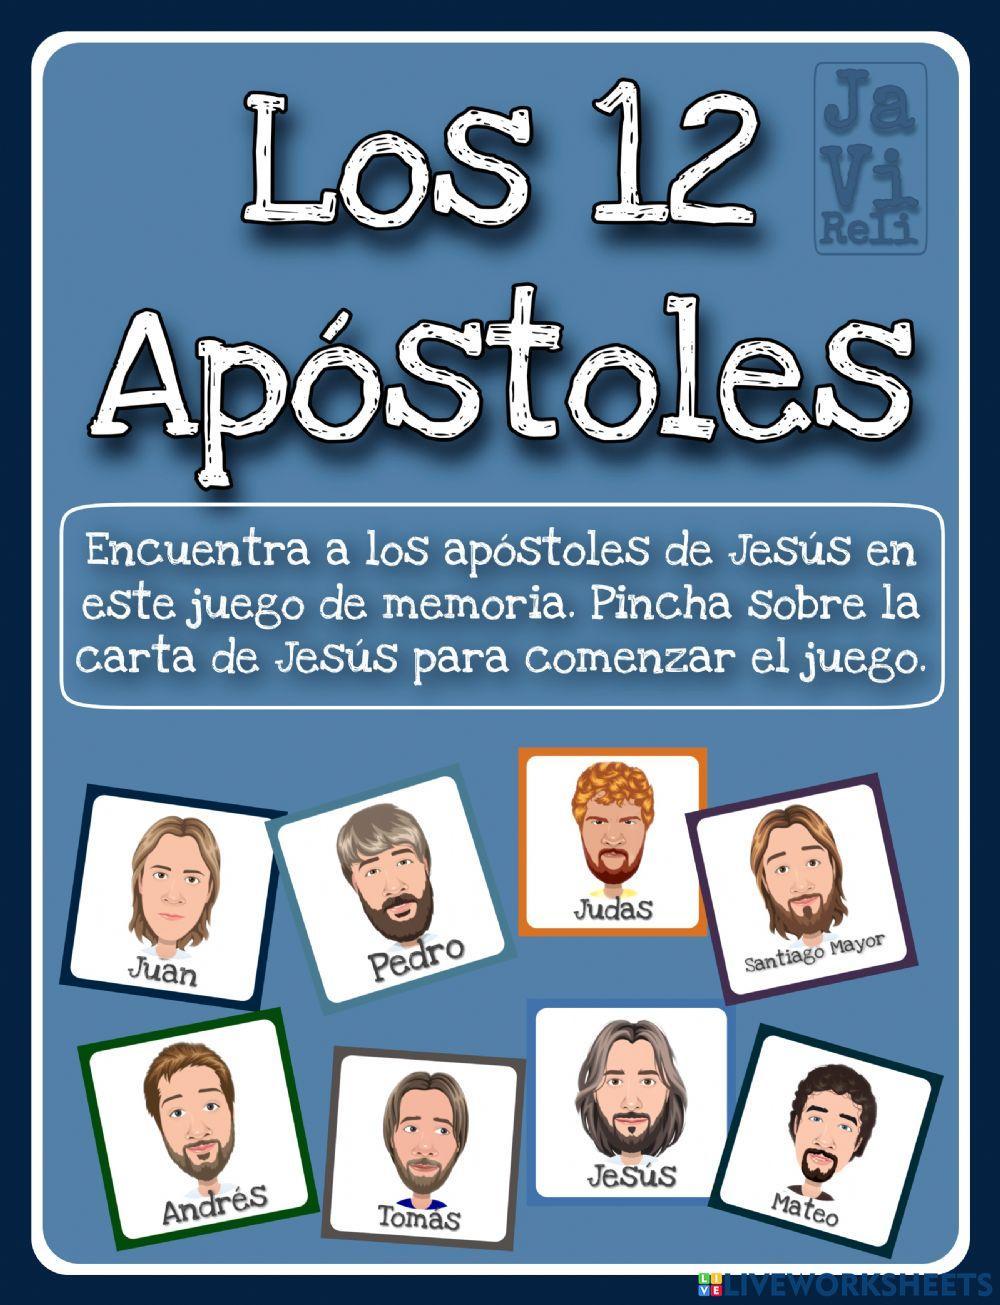 Los 12 Apóstoles